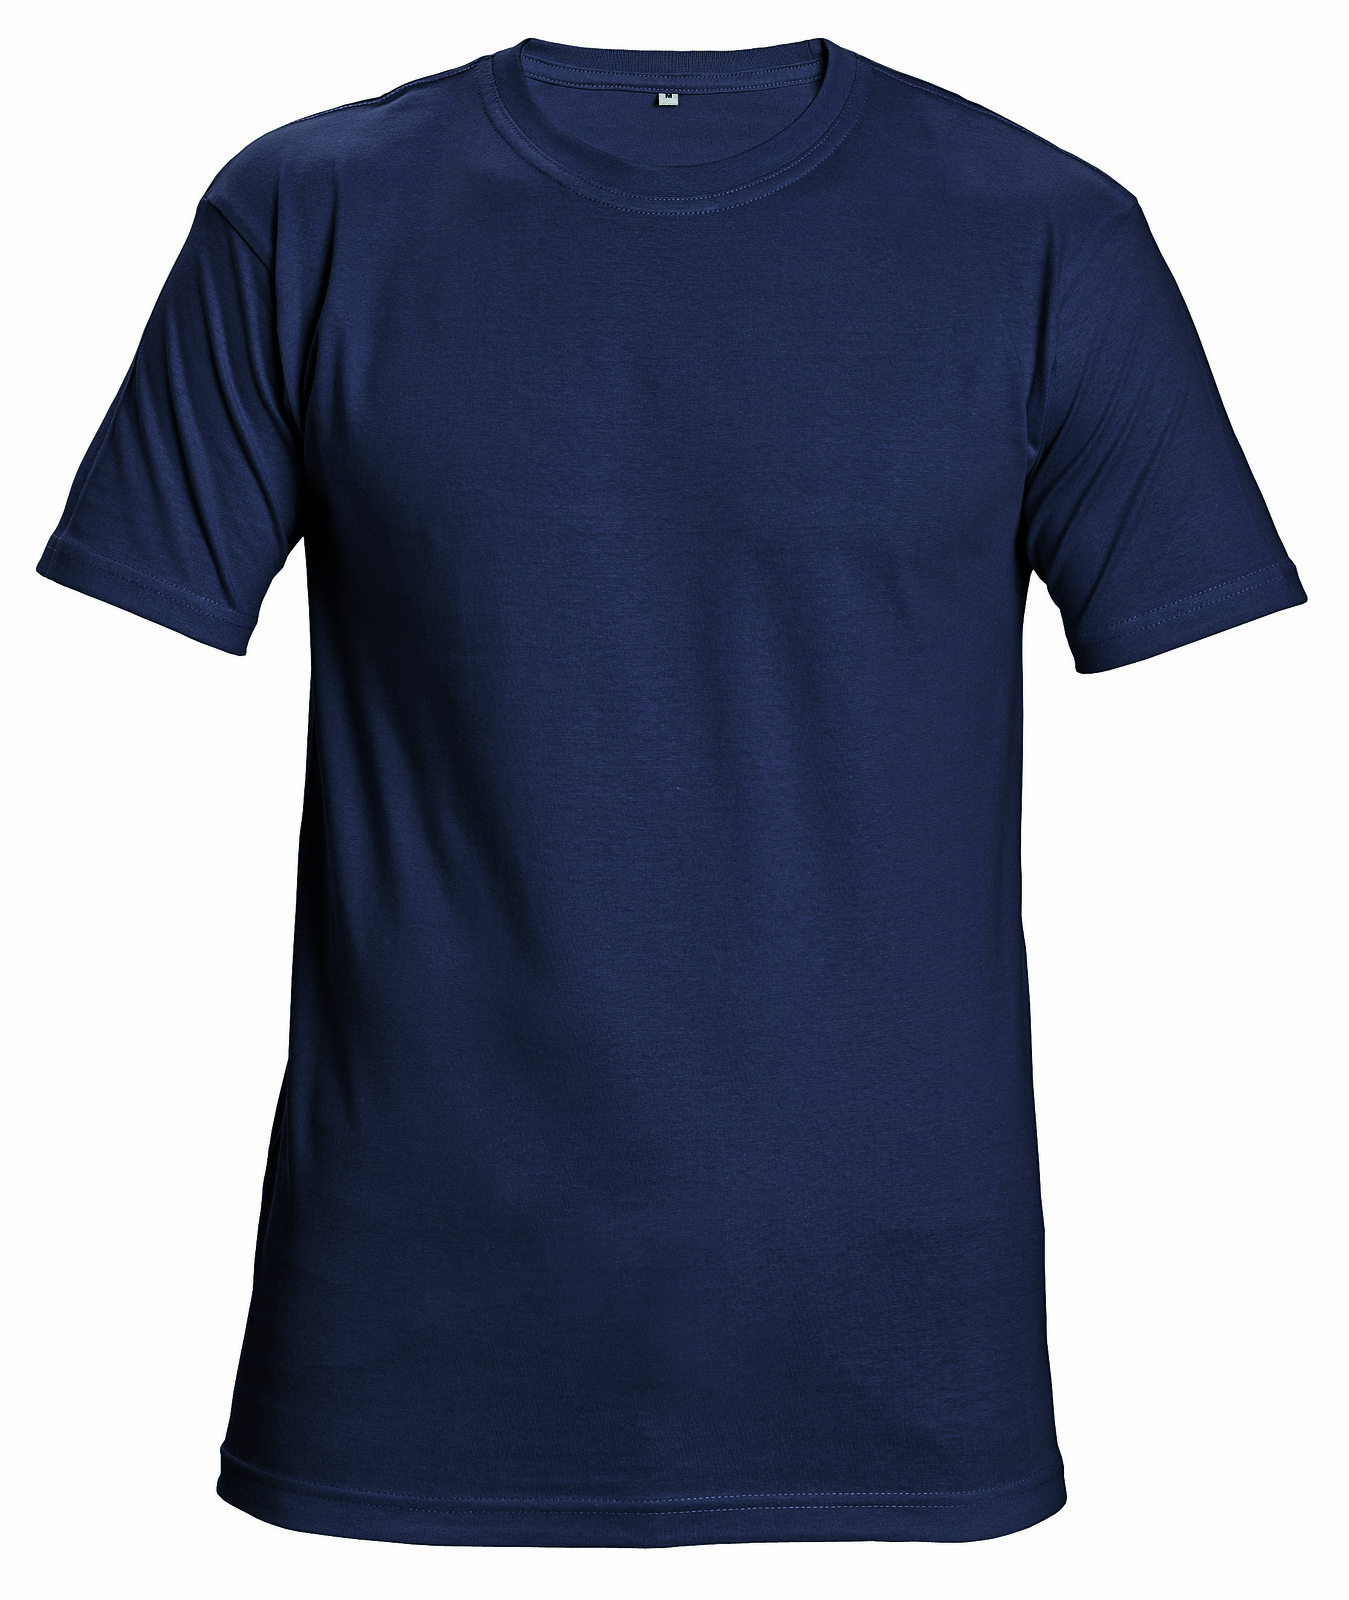 Bavlnené tričko s krátkym rukávom Garai - veľkosť: S, farba: navy